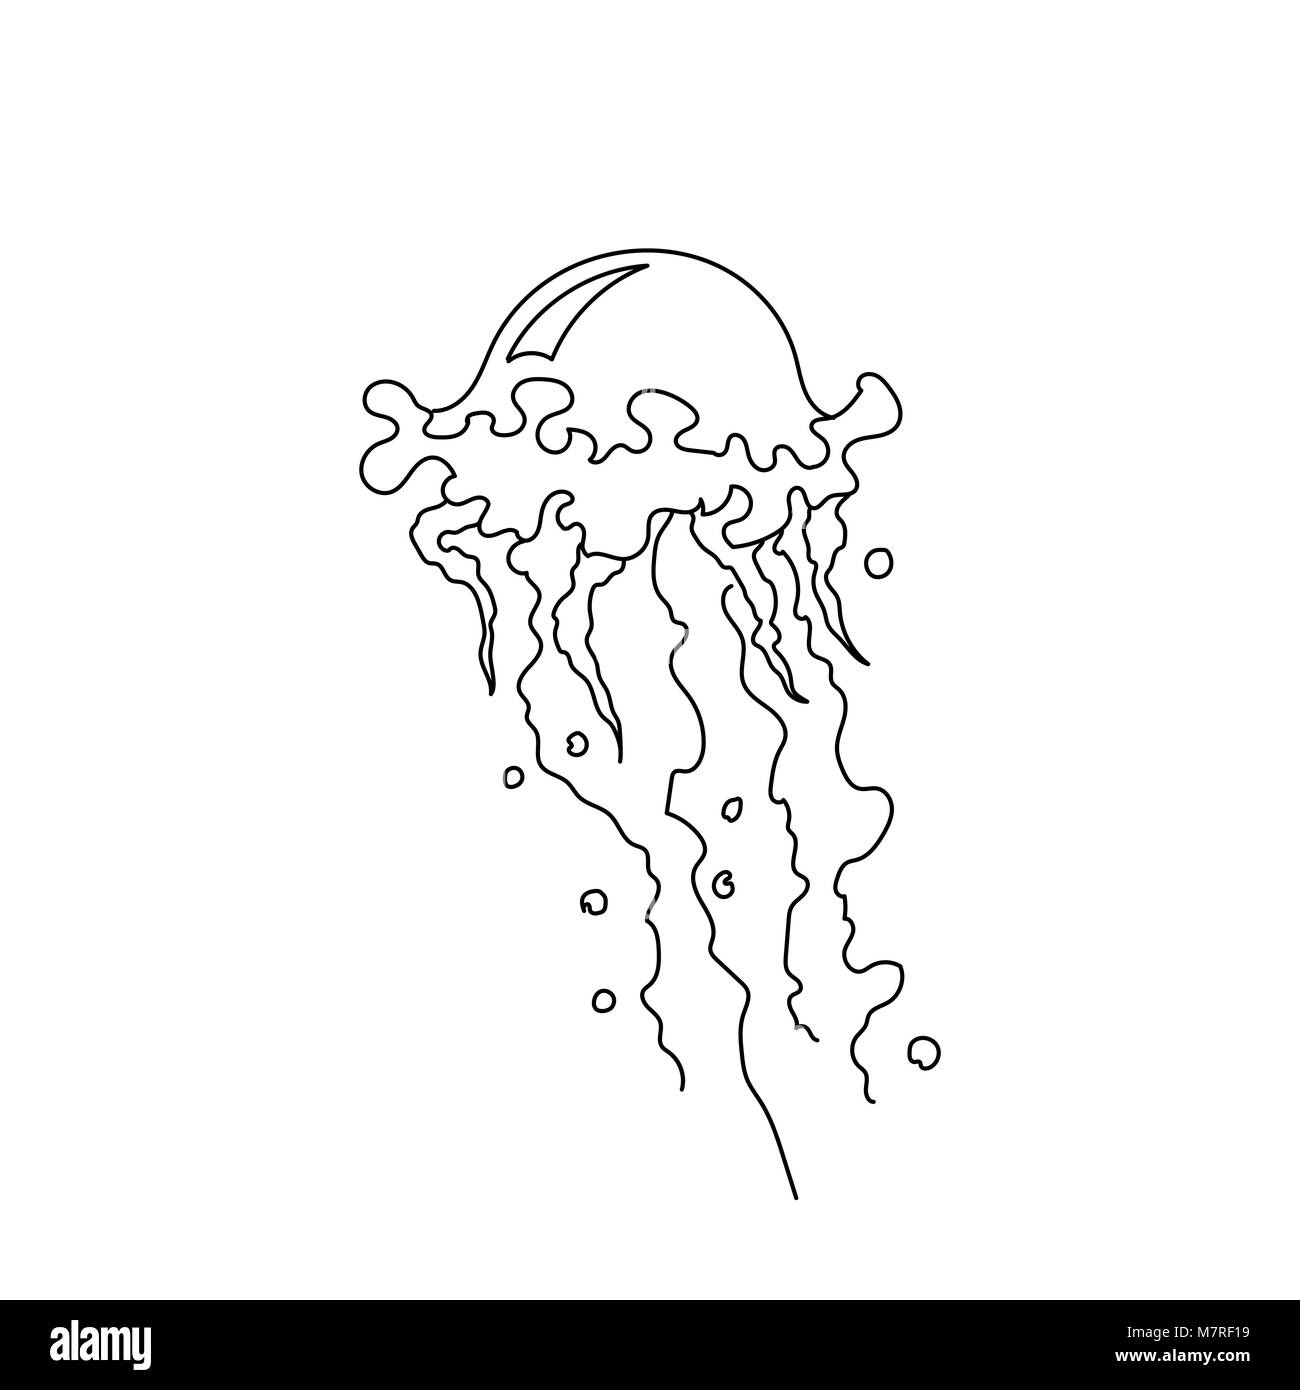 Vector illustration de méduses. Les méduses dessiné à la main. Collection d'art de la ligne de mer Illustration de Vecteur